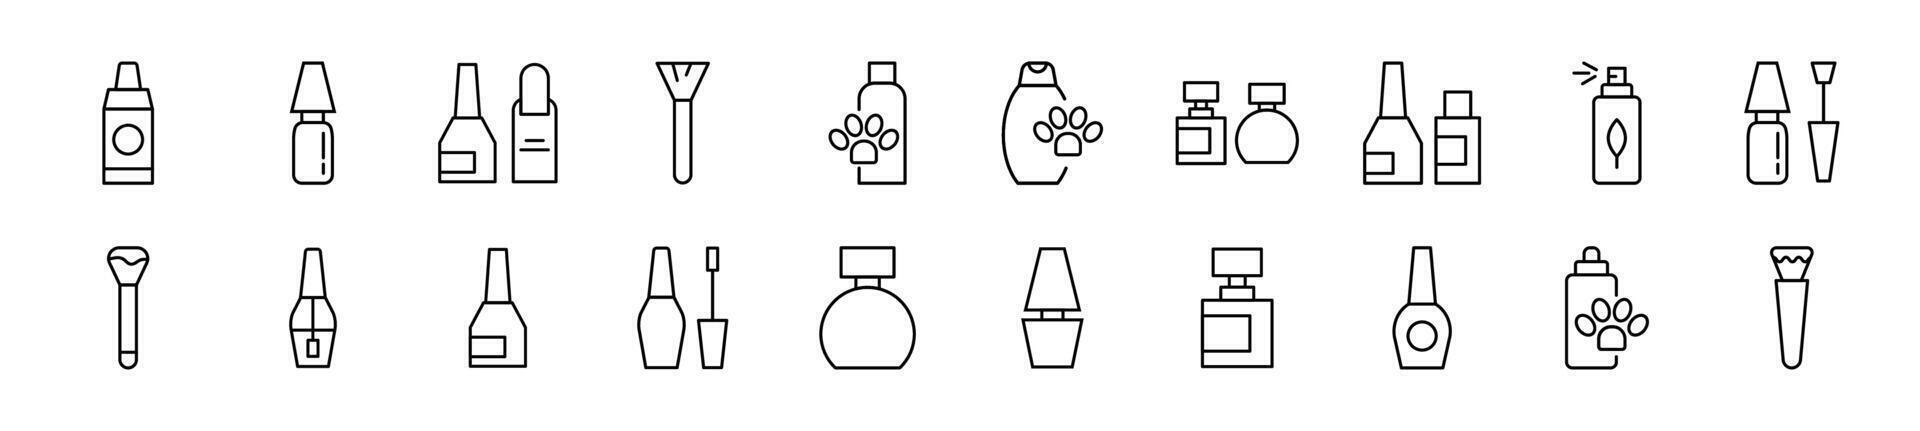 Cosmético garrafa vetor pictogramas desenhado com fino linha. editável AVC. simples linear ilustração para rede sites, jornais, artigos livro